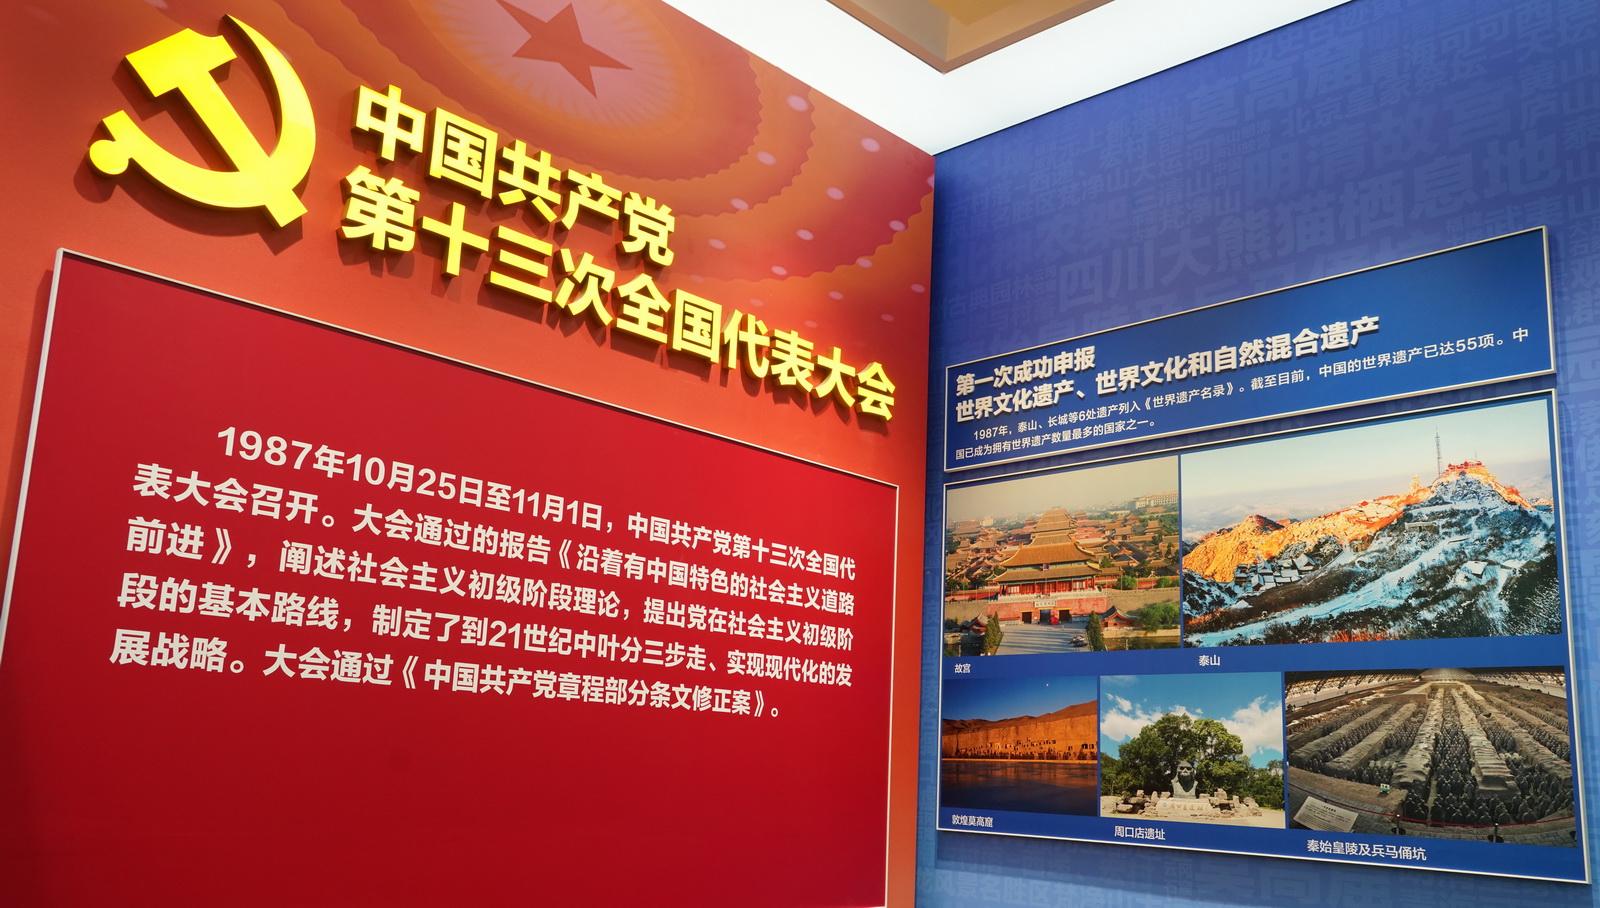 中國共產黨第十三次全國代表大會﹔第一次成功申報世界文化遺產、世界文化和自然混合遺產。